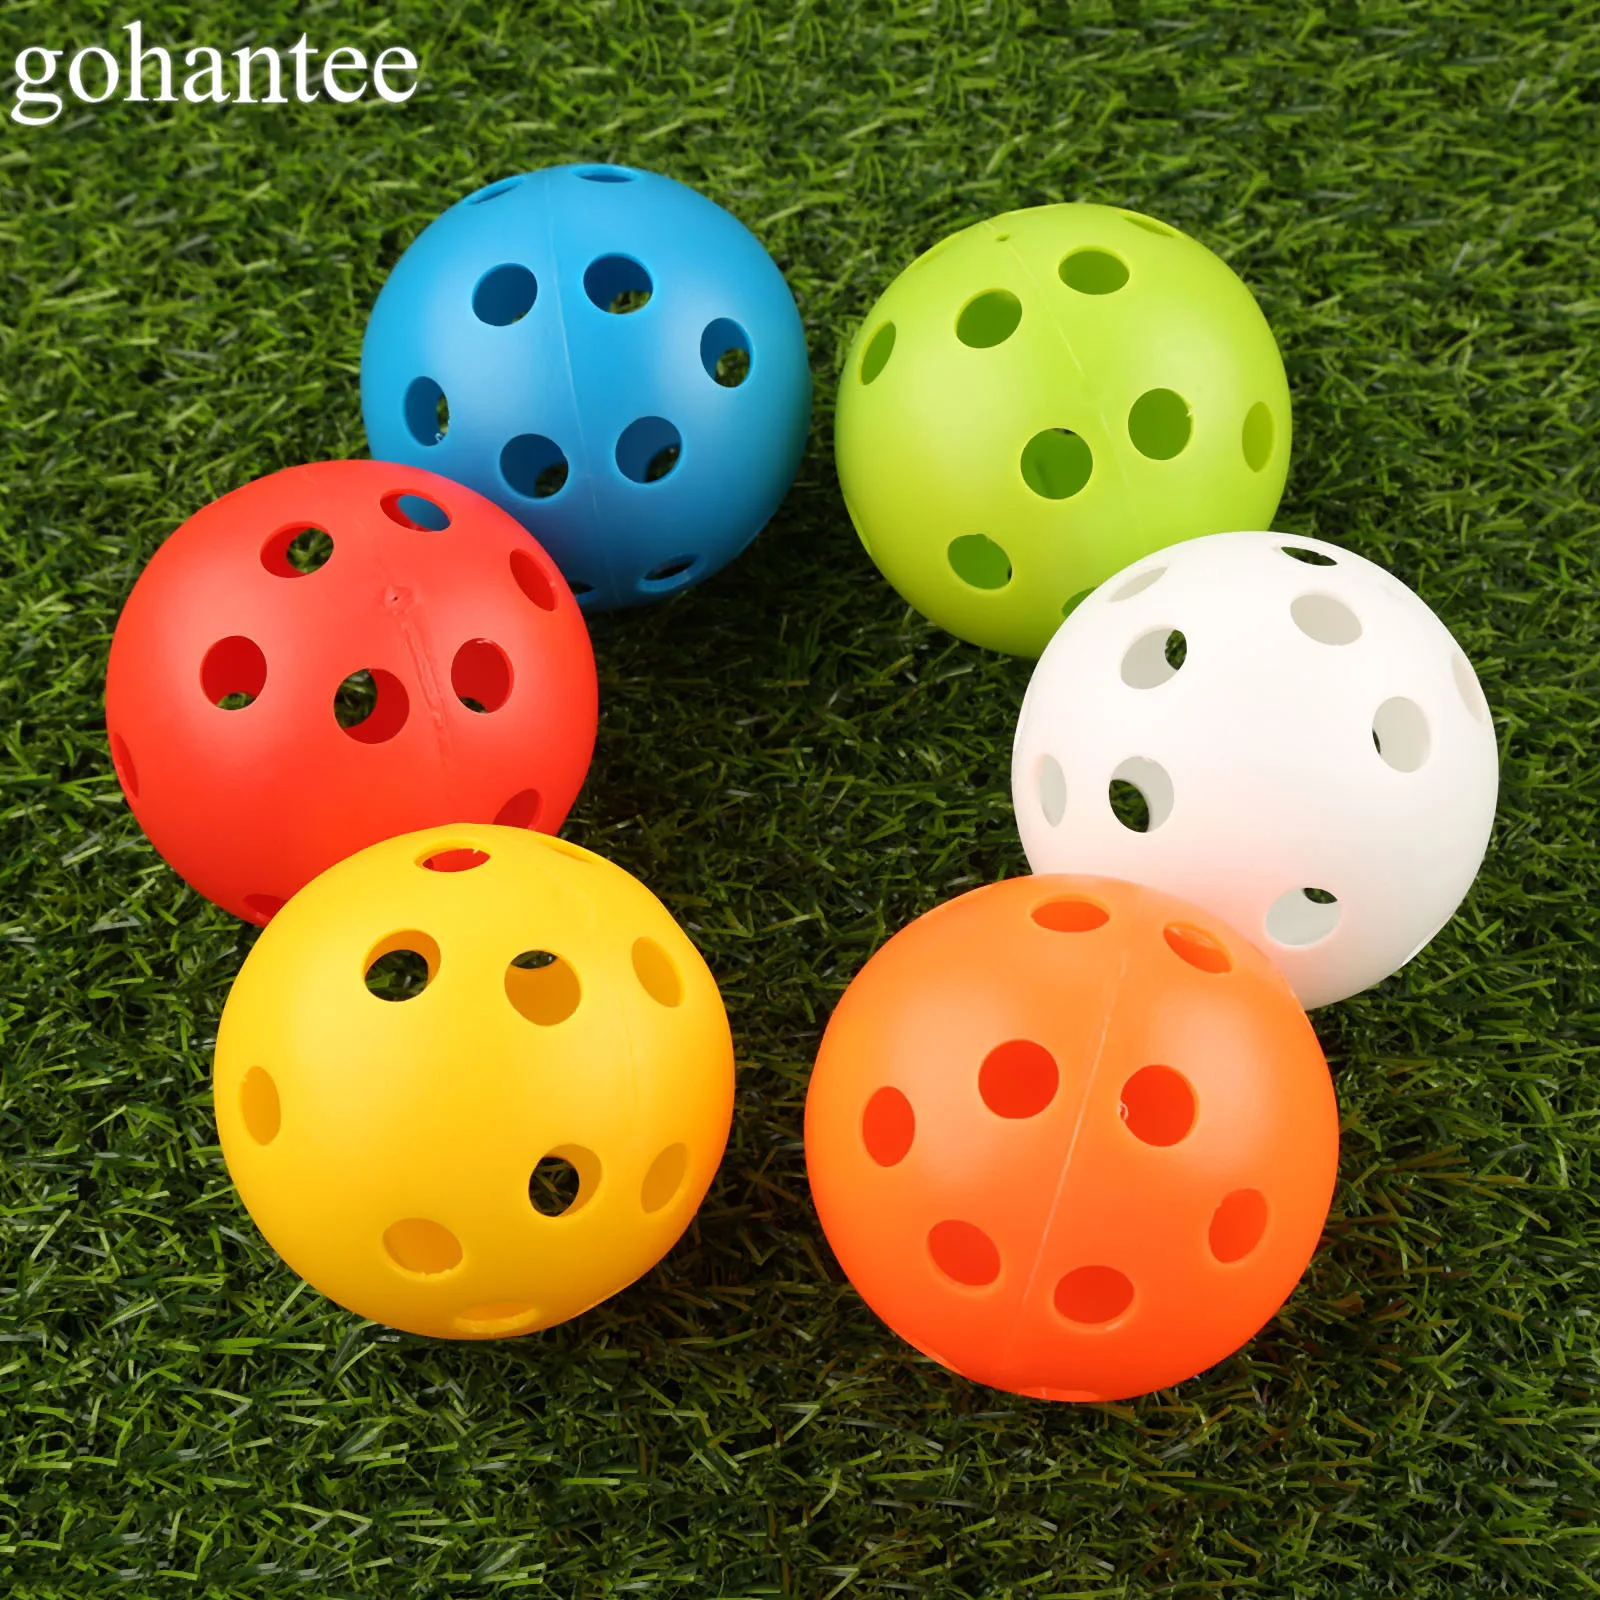 Gohantee, новинка, креативные резиновые мячи для гольфа, 6 видов шаблонов, мячи для игры в гольф, похожие на мячи для игры в регби, футбол, спорт, чемпион, мячи для гольфа